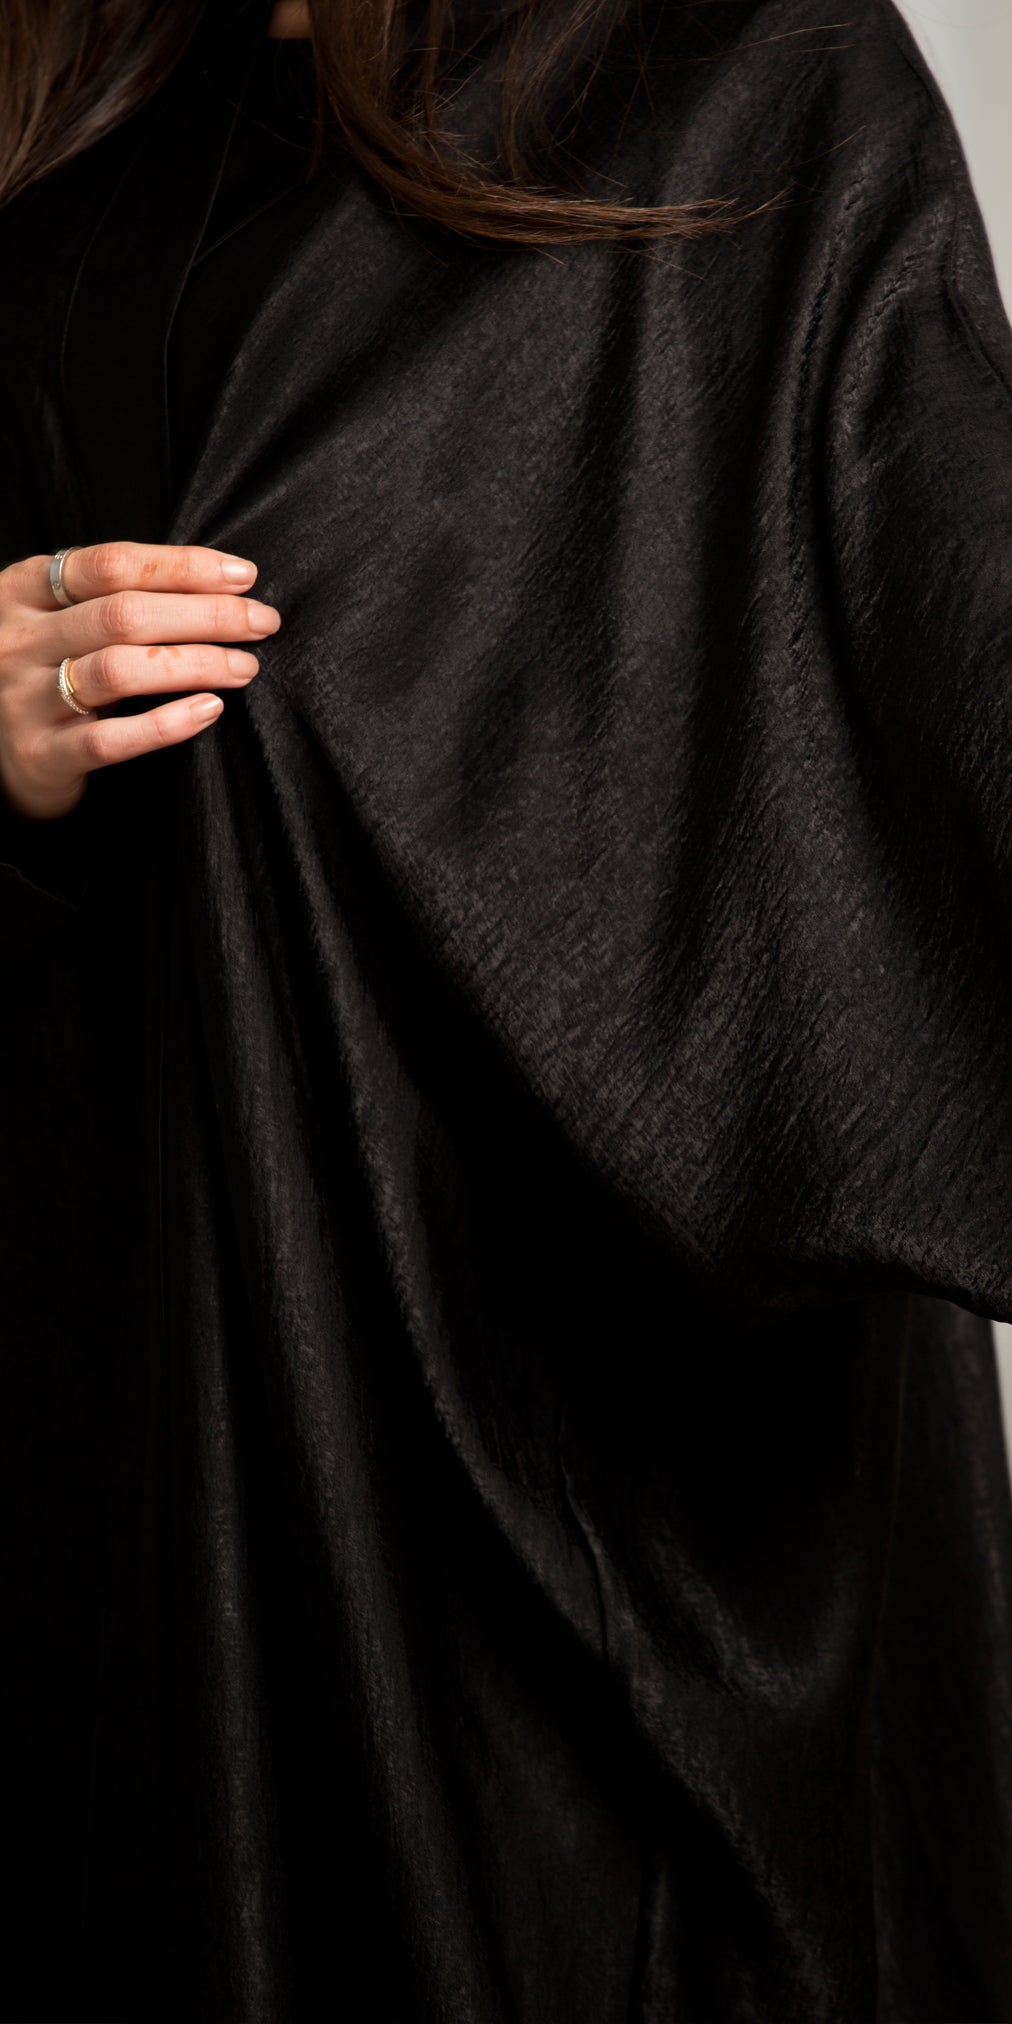 BL-0196 Abaya, wide model, black silk fabric